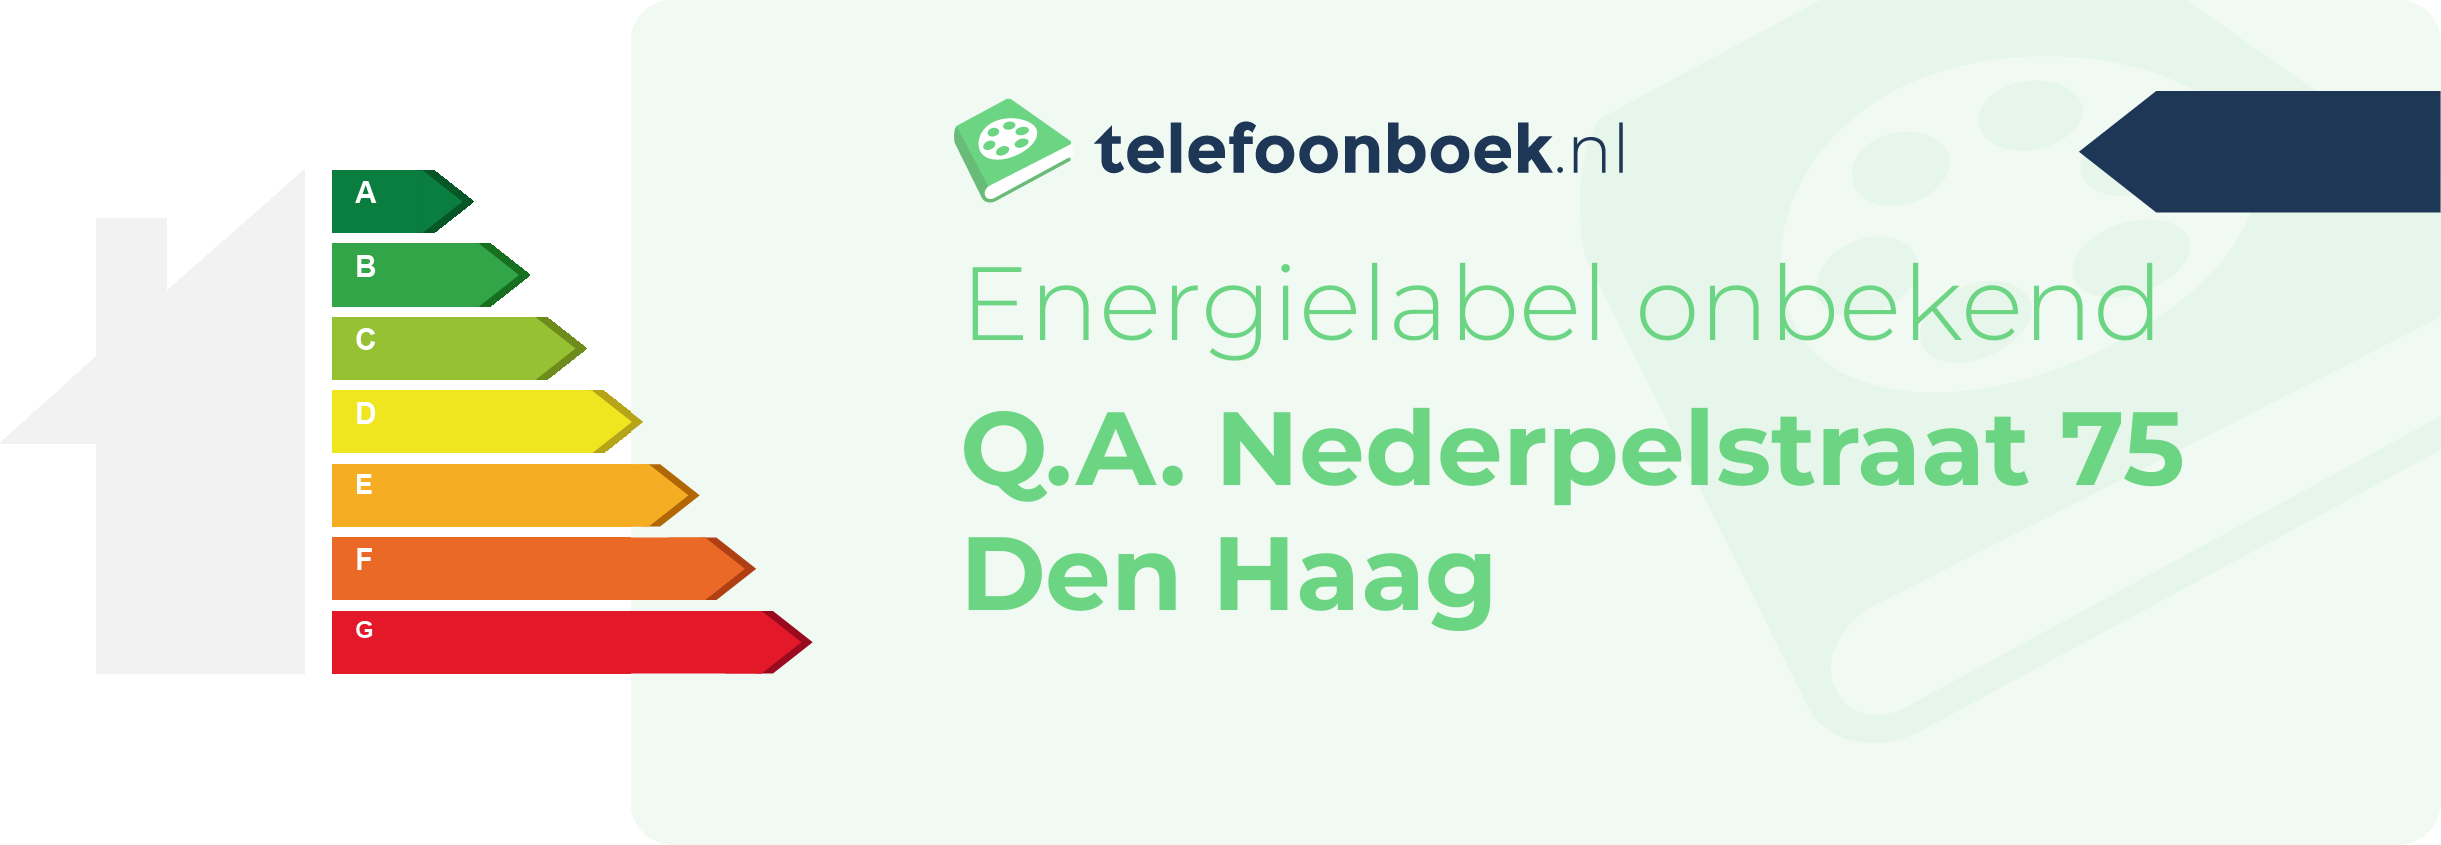 Energielabel Q.A. Nederpelstraat 75 Den Haag